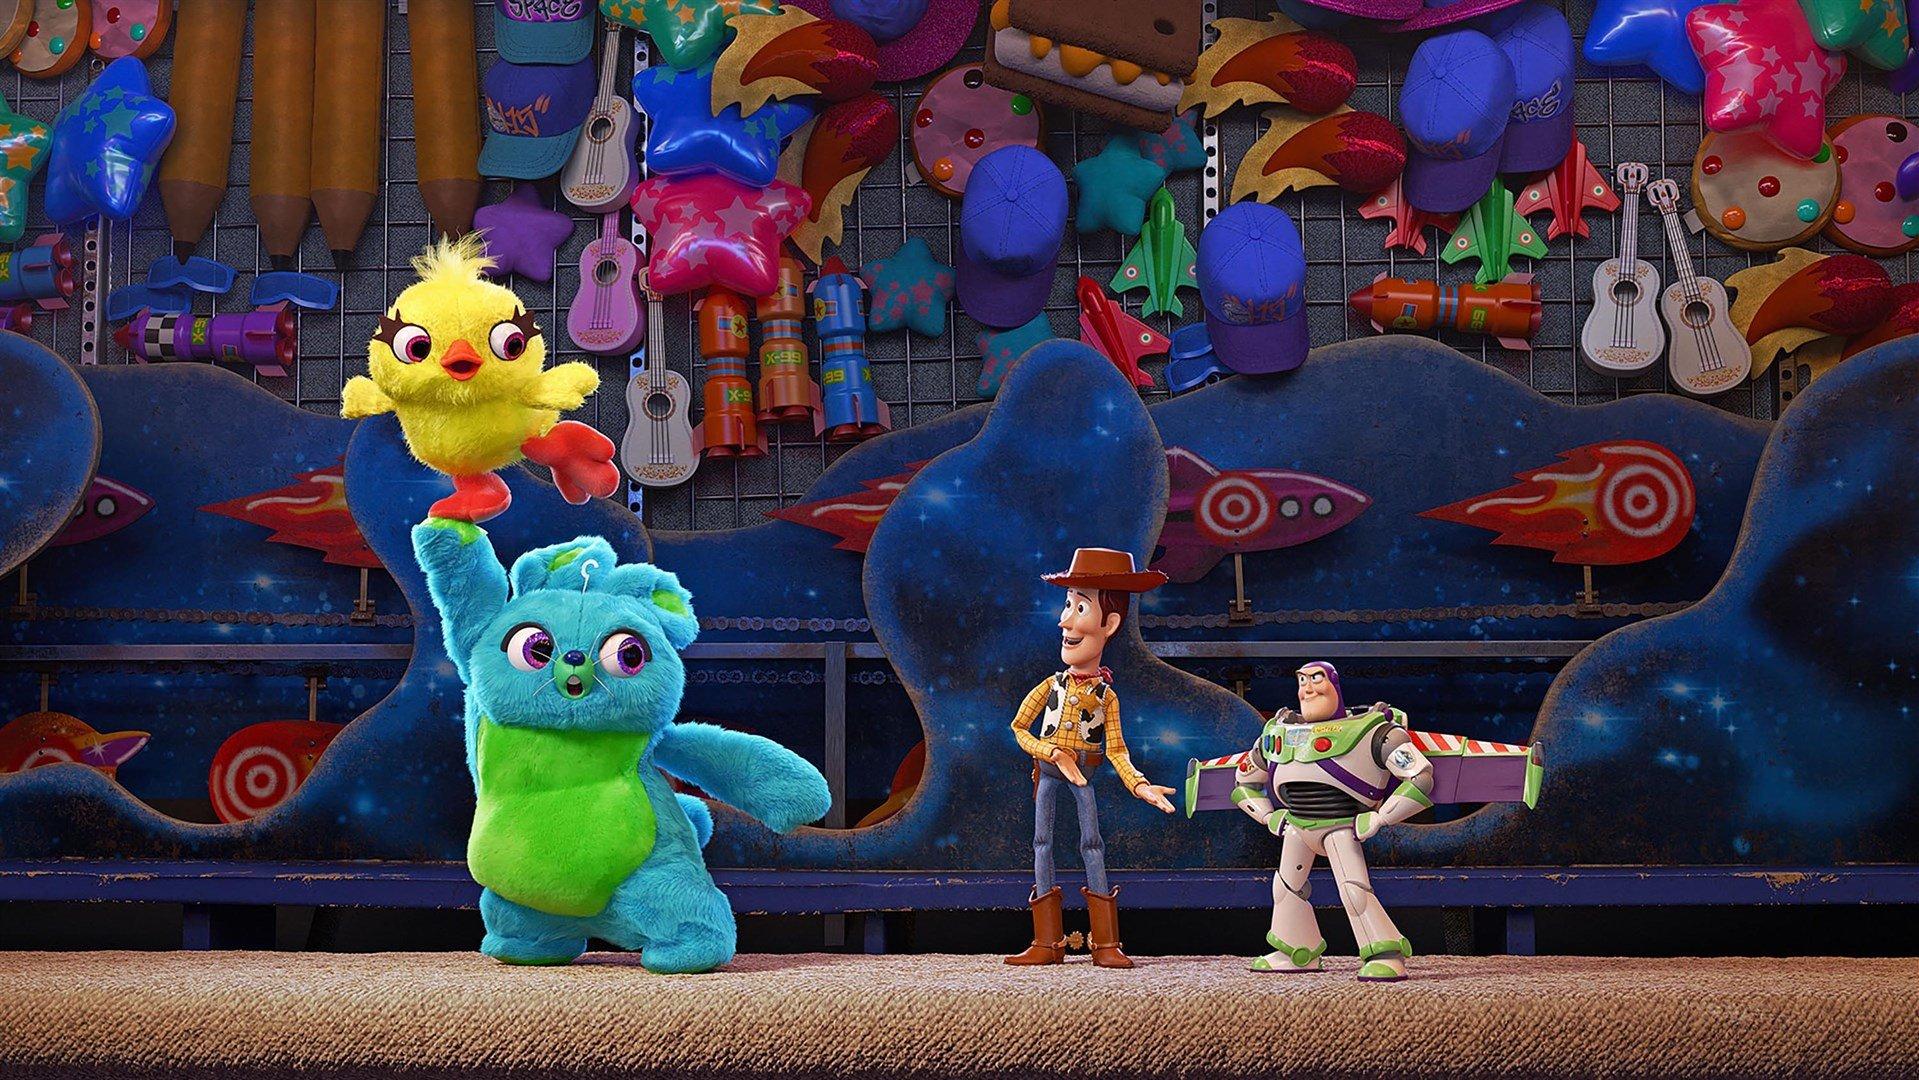 Toy Story 4 và Frozen 2